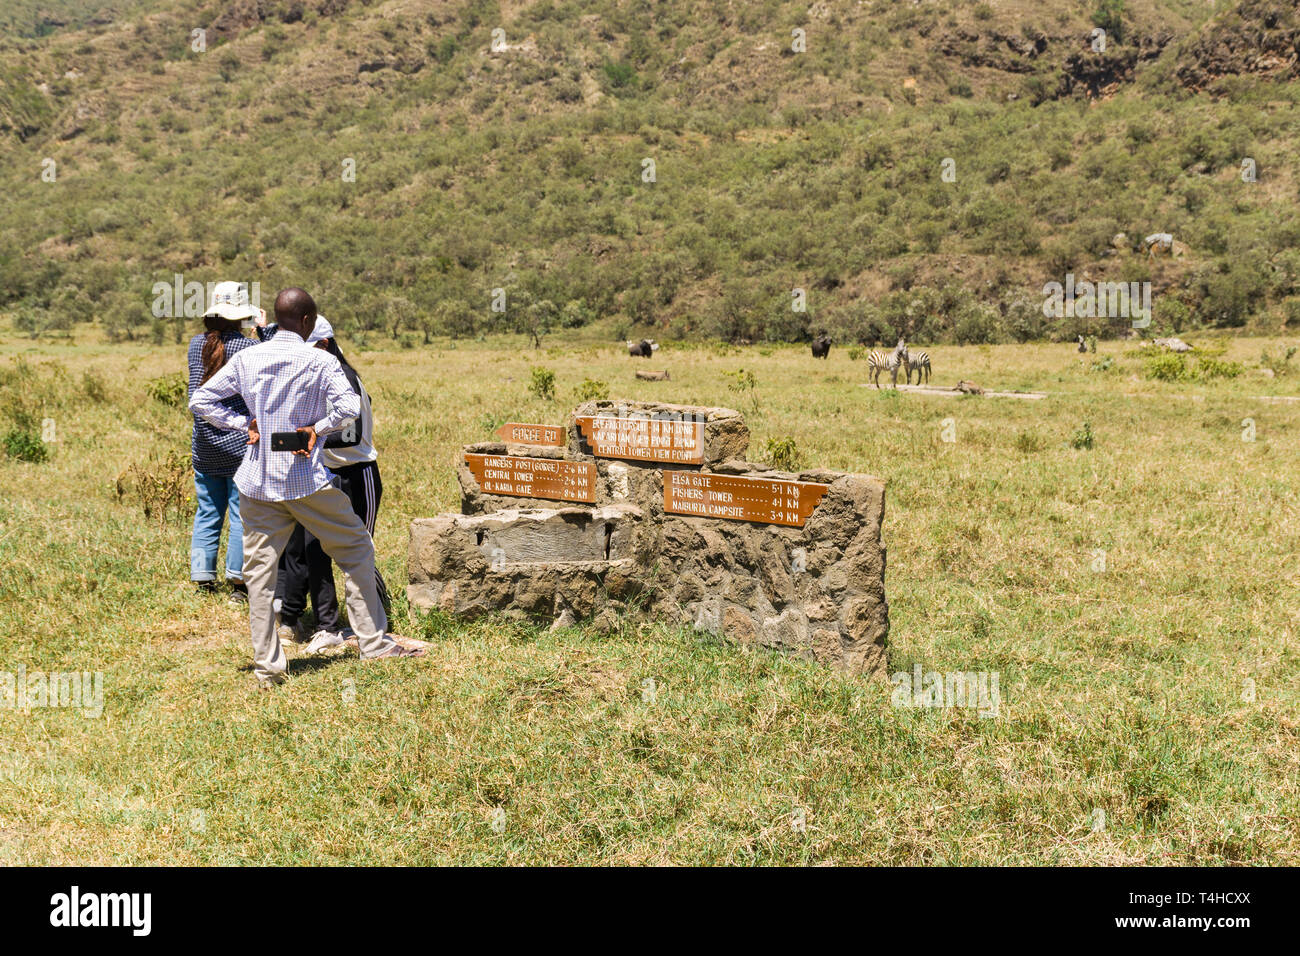 Les touristes debout près de Stone Road sign à la faune, à Hells Gate National Park, Kenya Banque D'Images